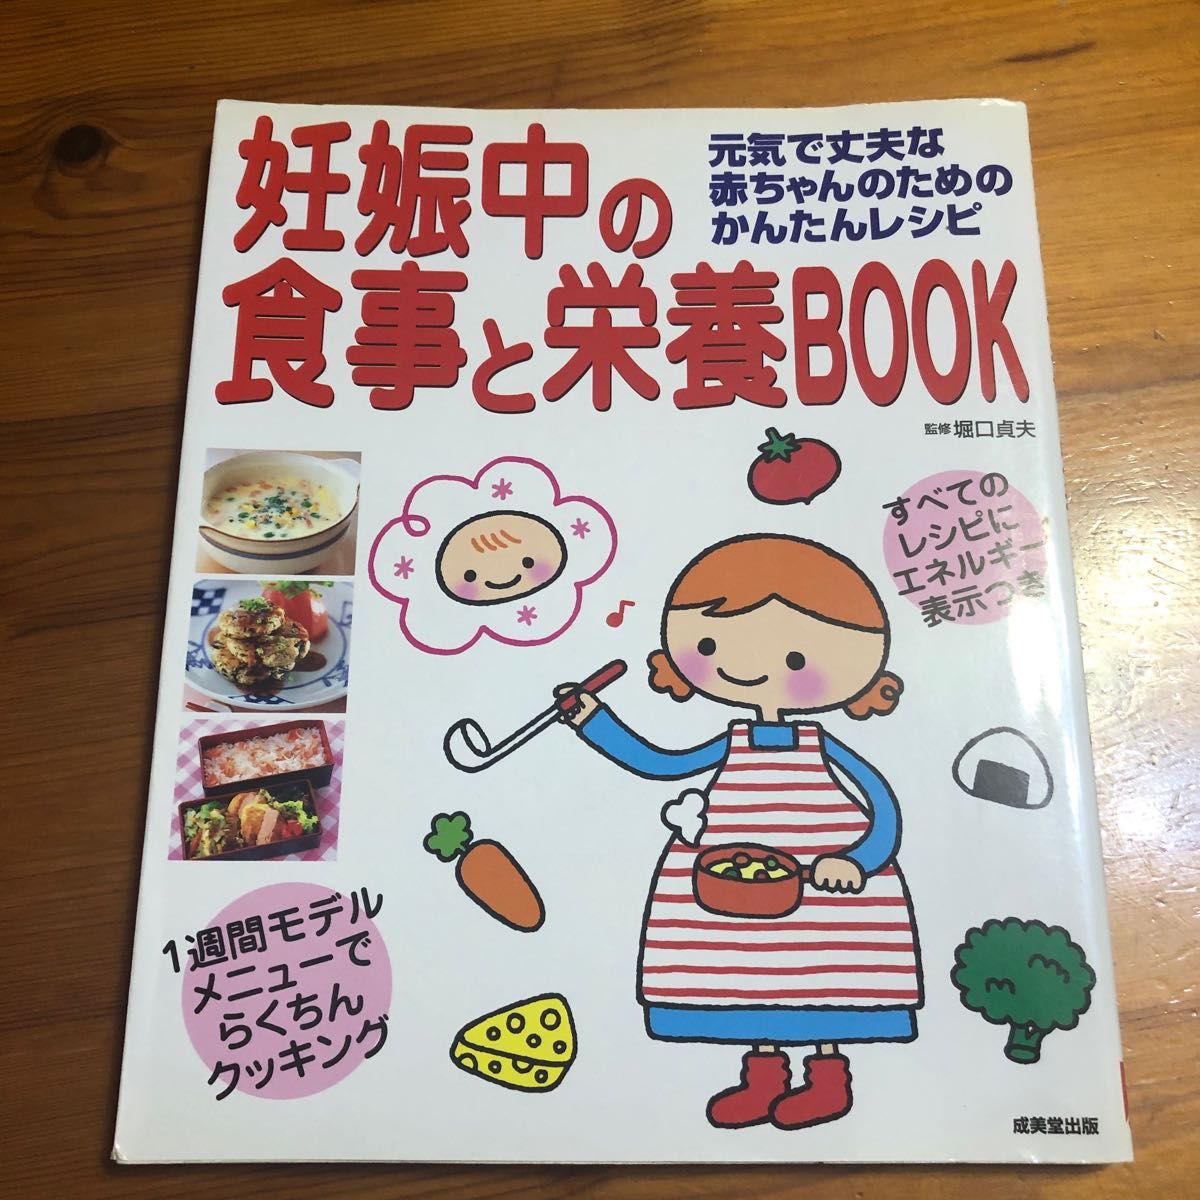 「妊娠中の食事と栄養book : 元気で丈夫な赤ちゃんのためのかんたんレシピ」堀口 貞夫